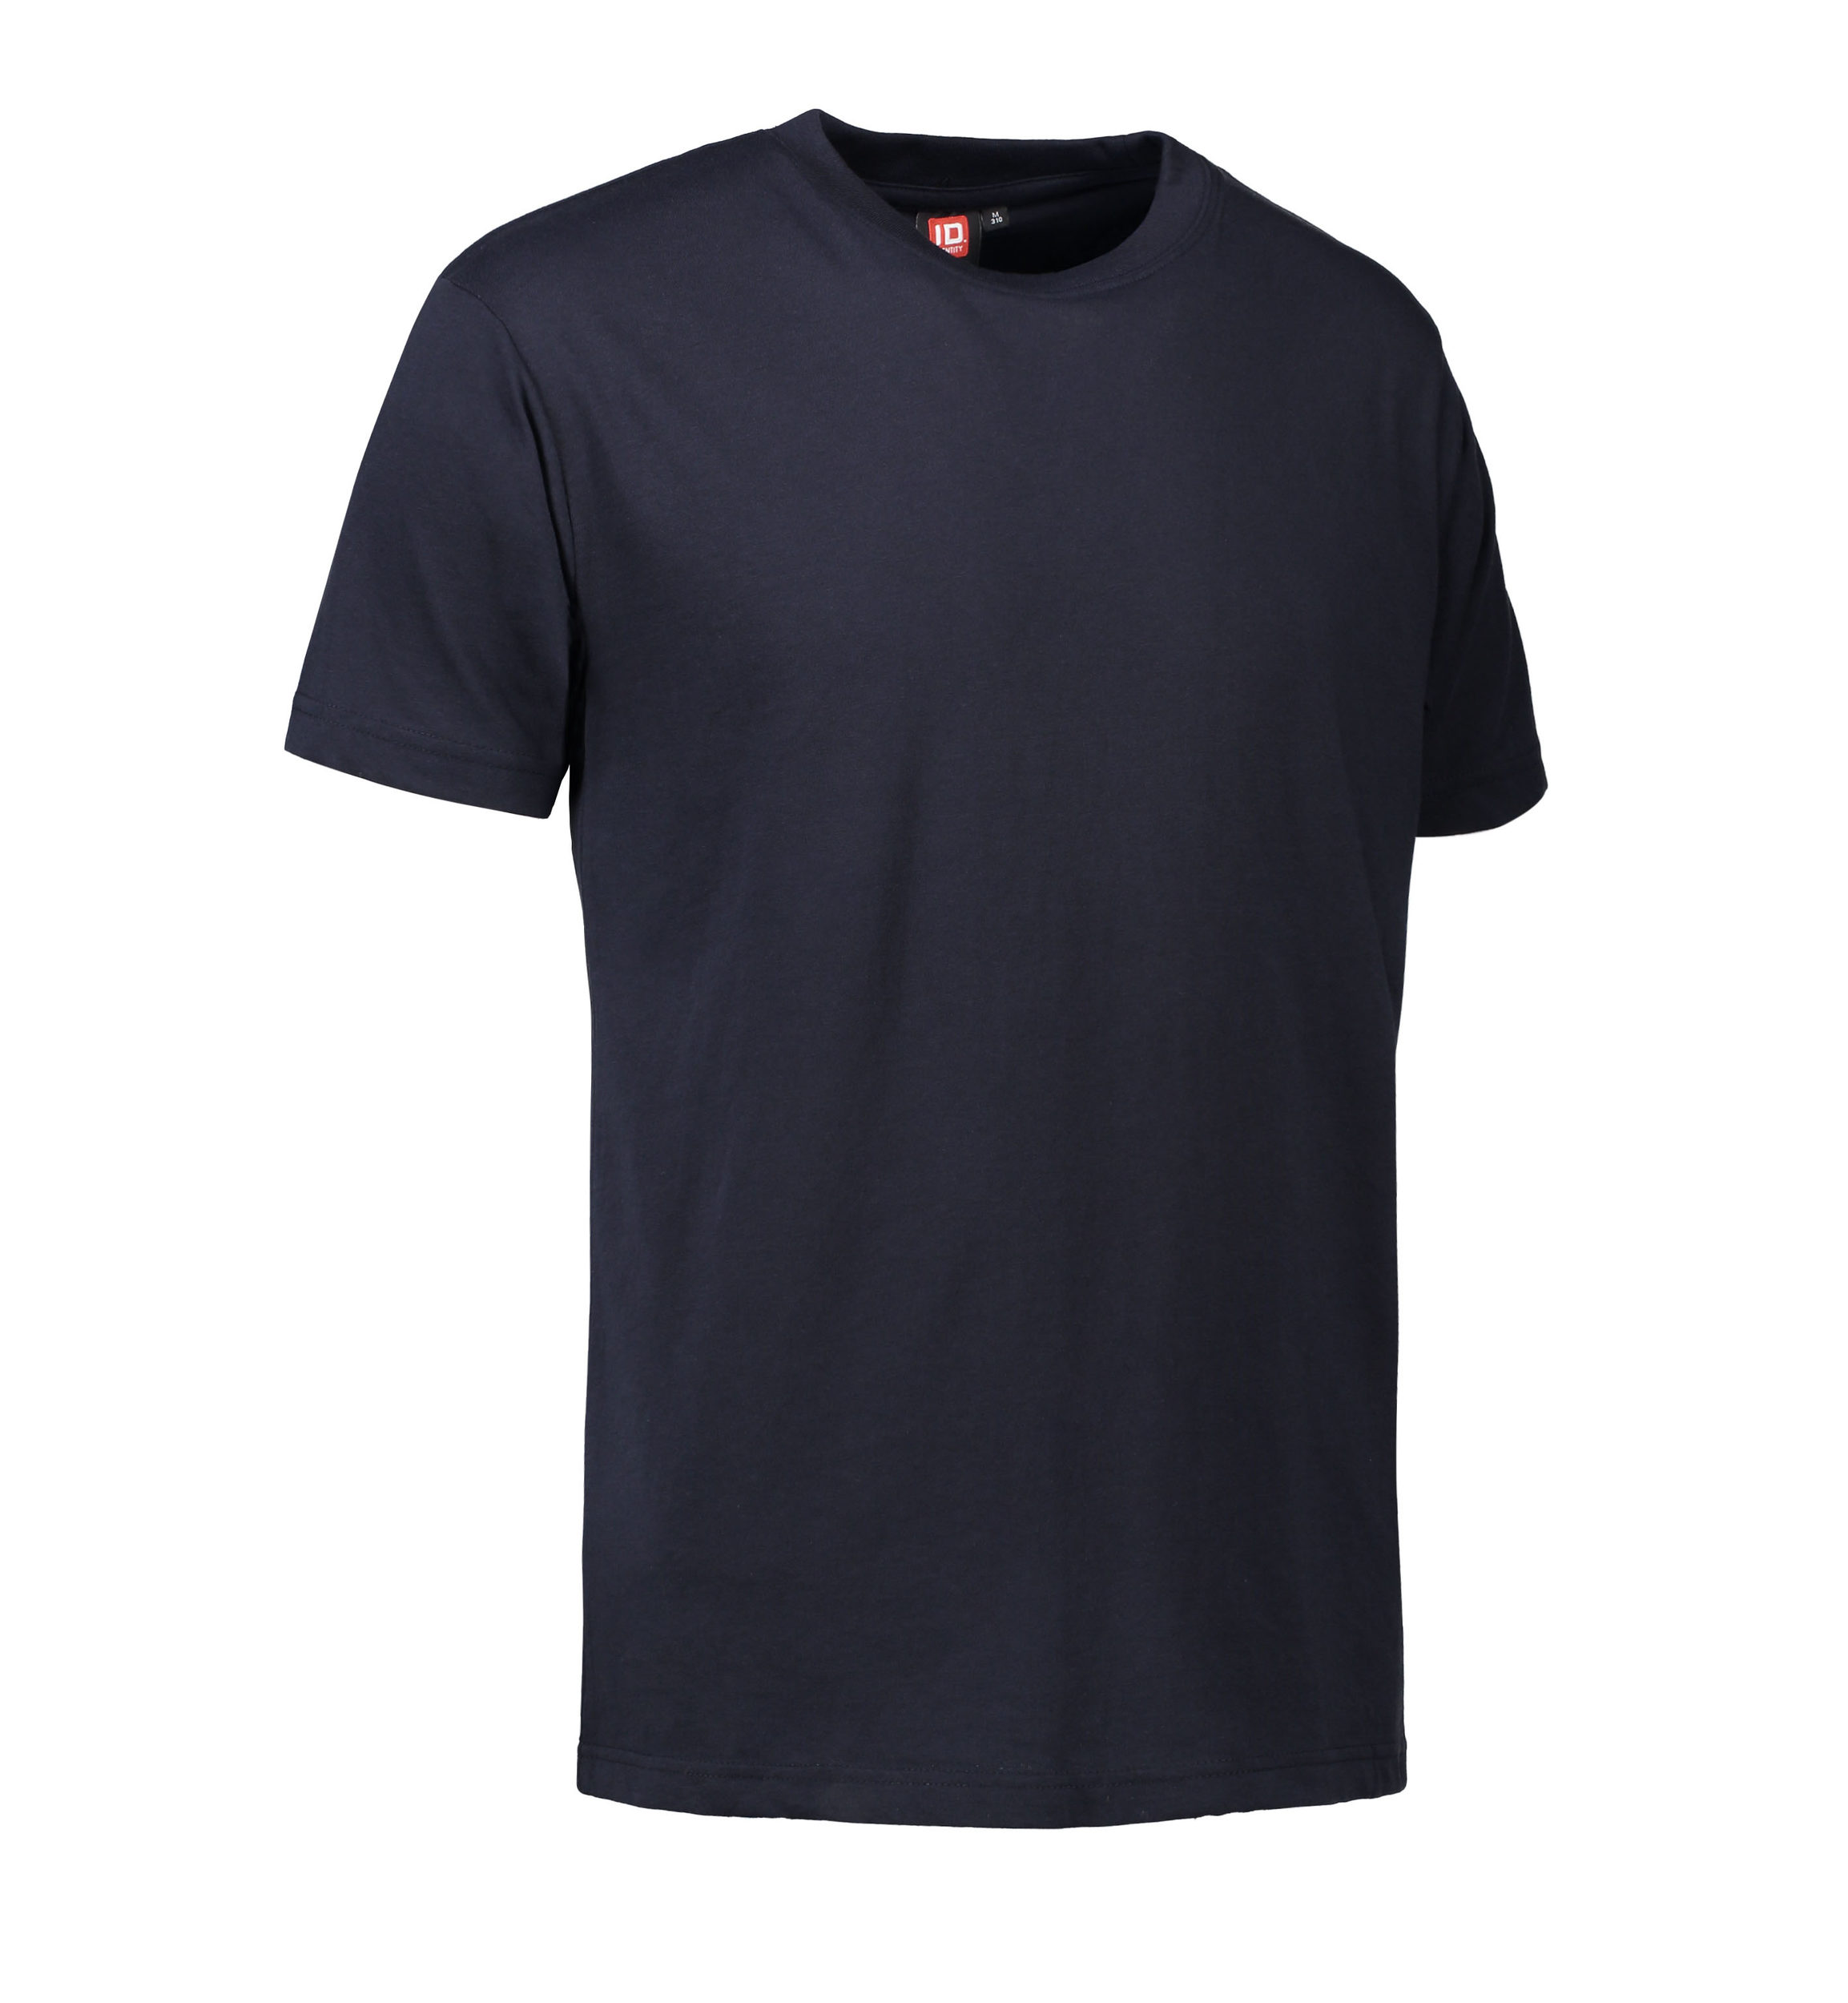 Se Slidstærk t-shirt i navy til mænd - 4XL hos Sygeplejebutikken.dk